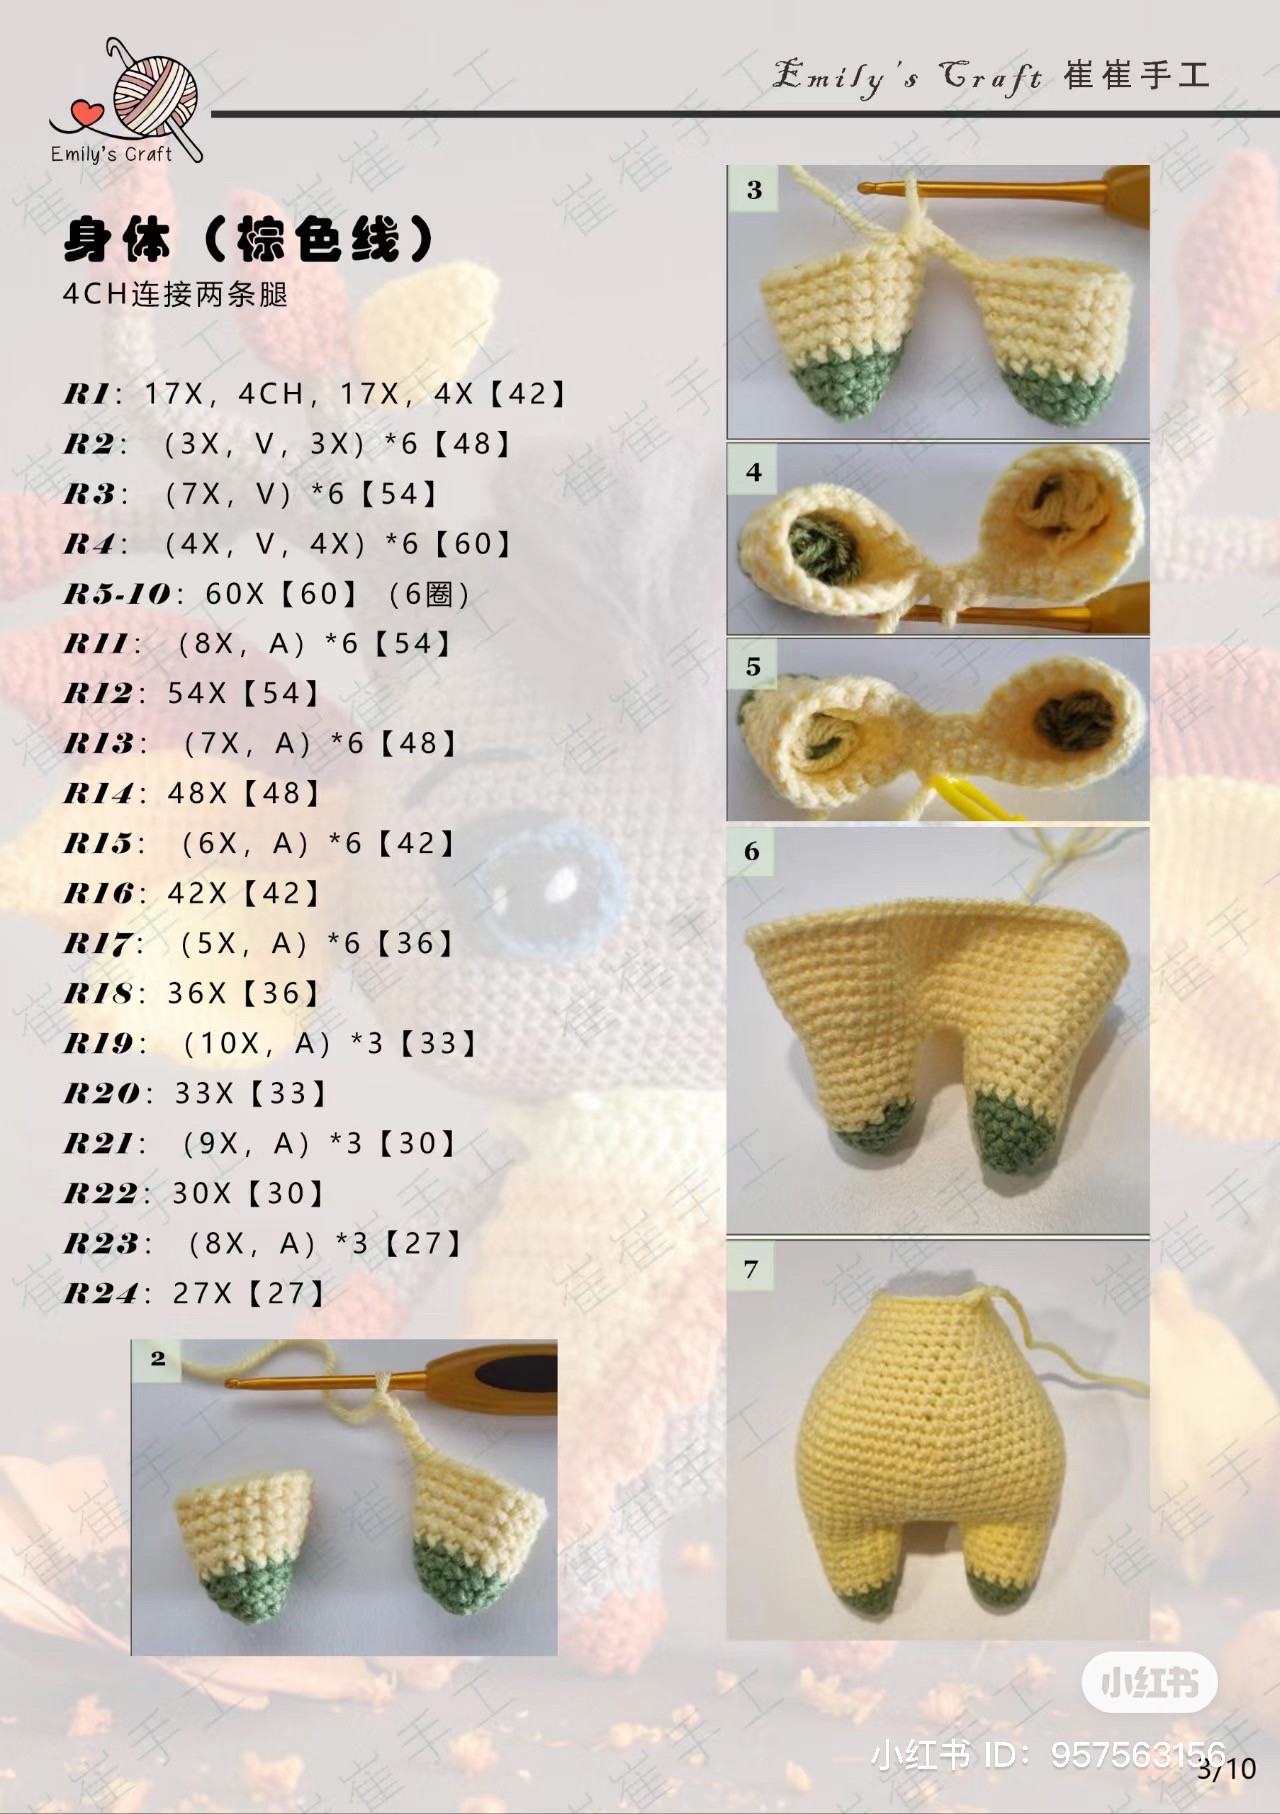 octagonal goblin crochet pattern
bat